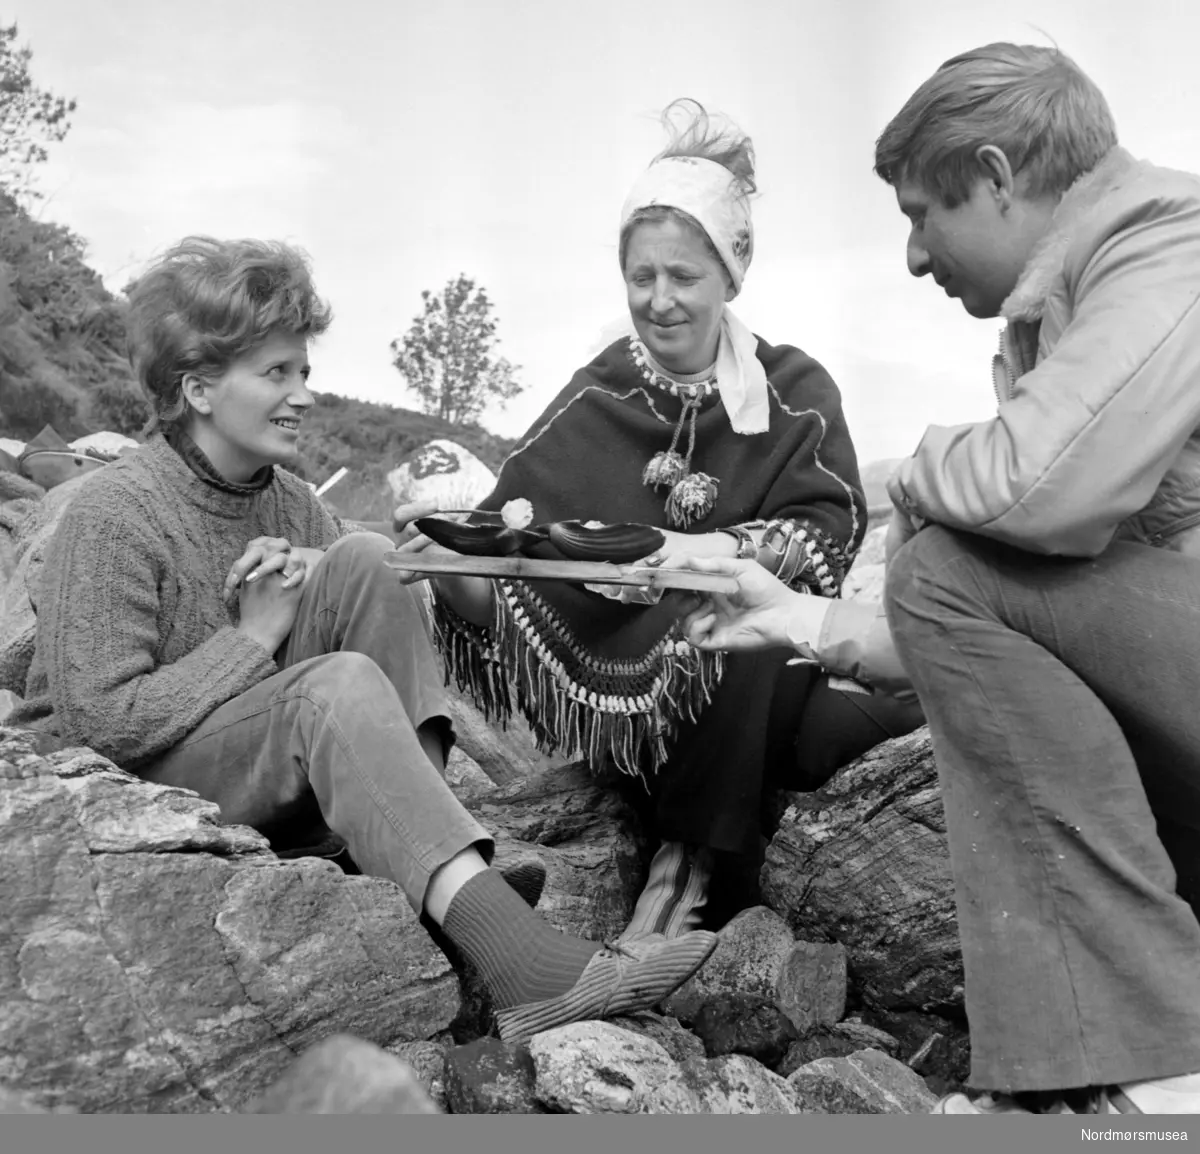 Bilde i forbindelse med en reportasje i Aftenposten om skjellsanking og fiske mm. Se brev 261/84. Arkiv nr. 44. Bildet er datert juni 1971. Nordmøre Museums fotosamling